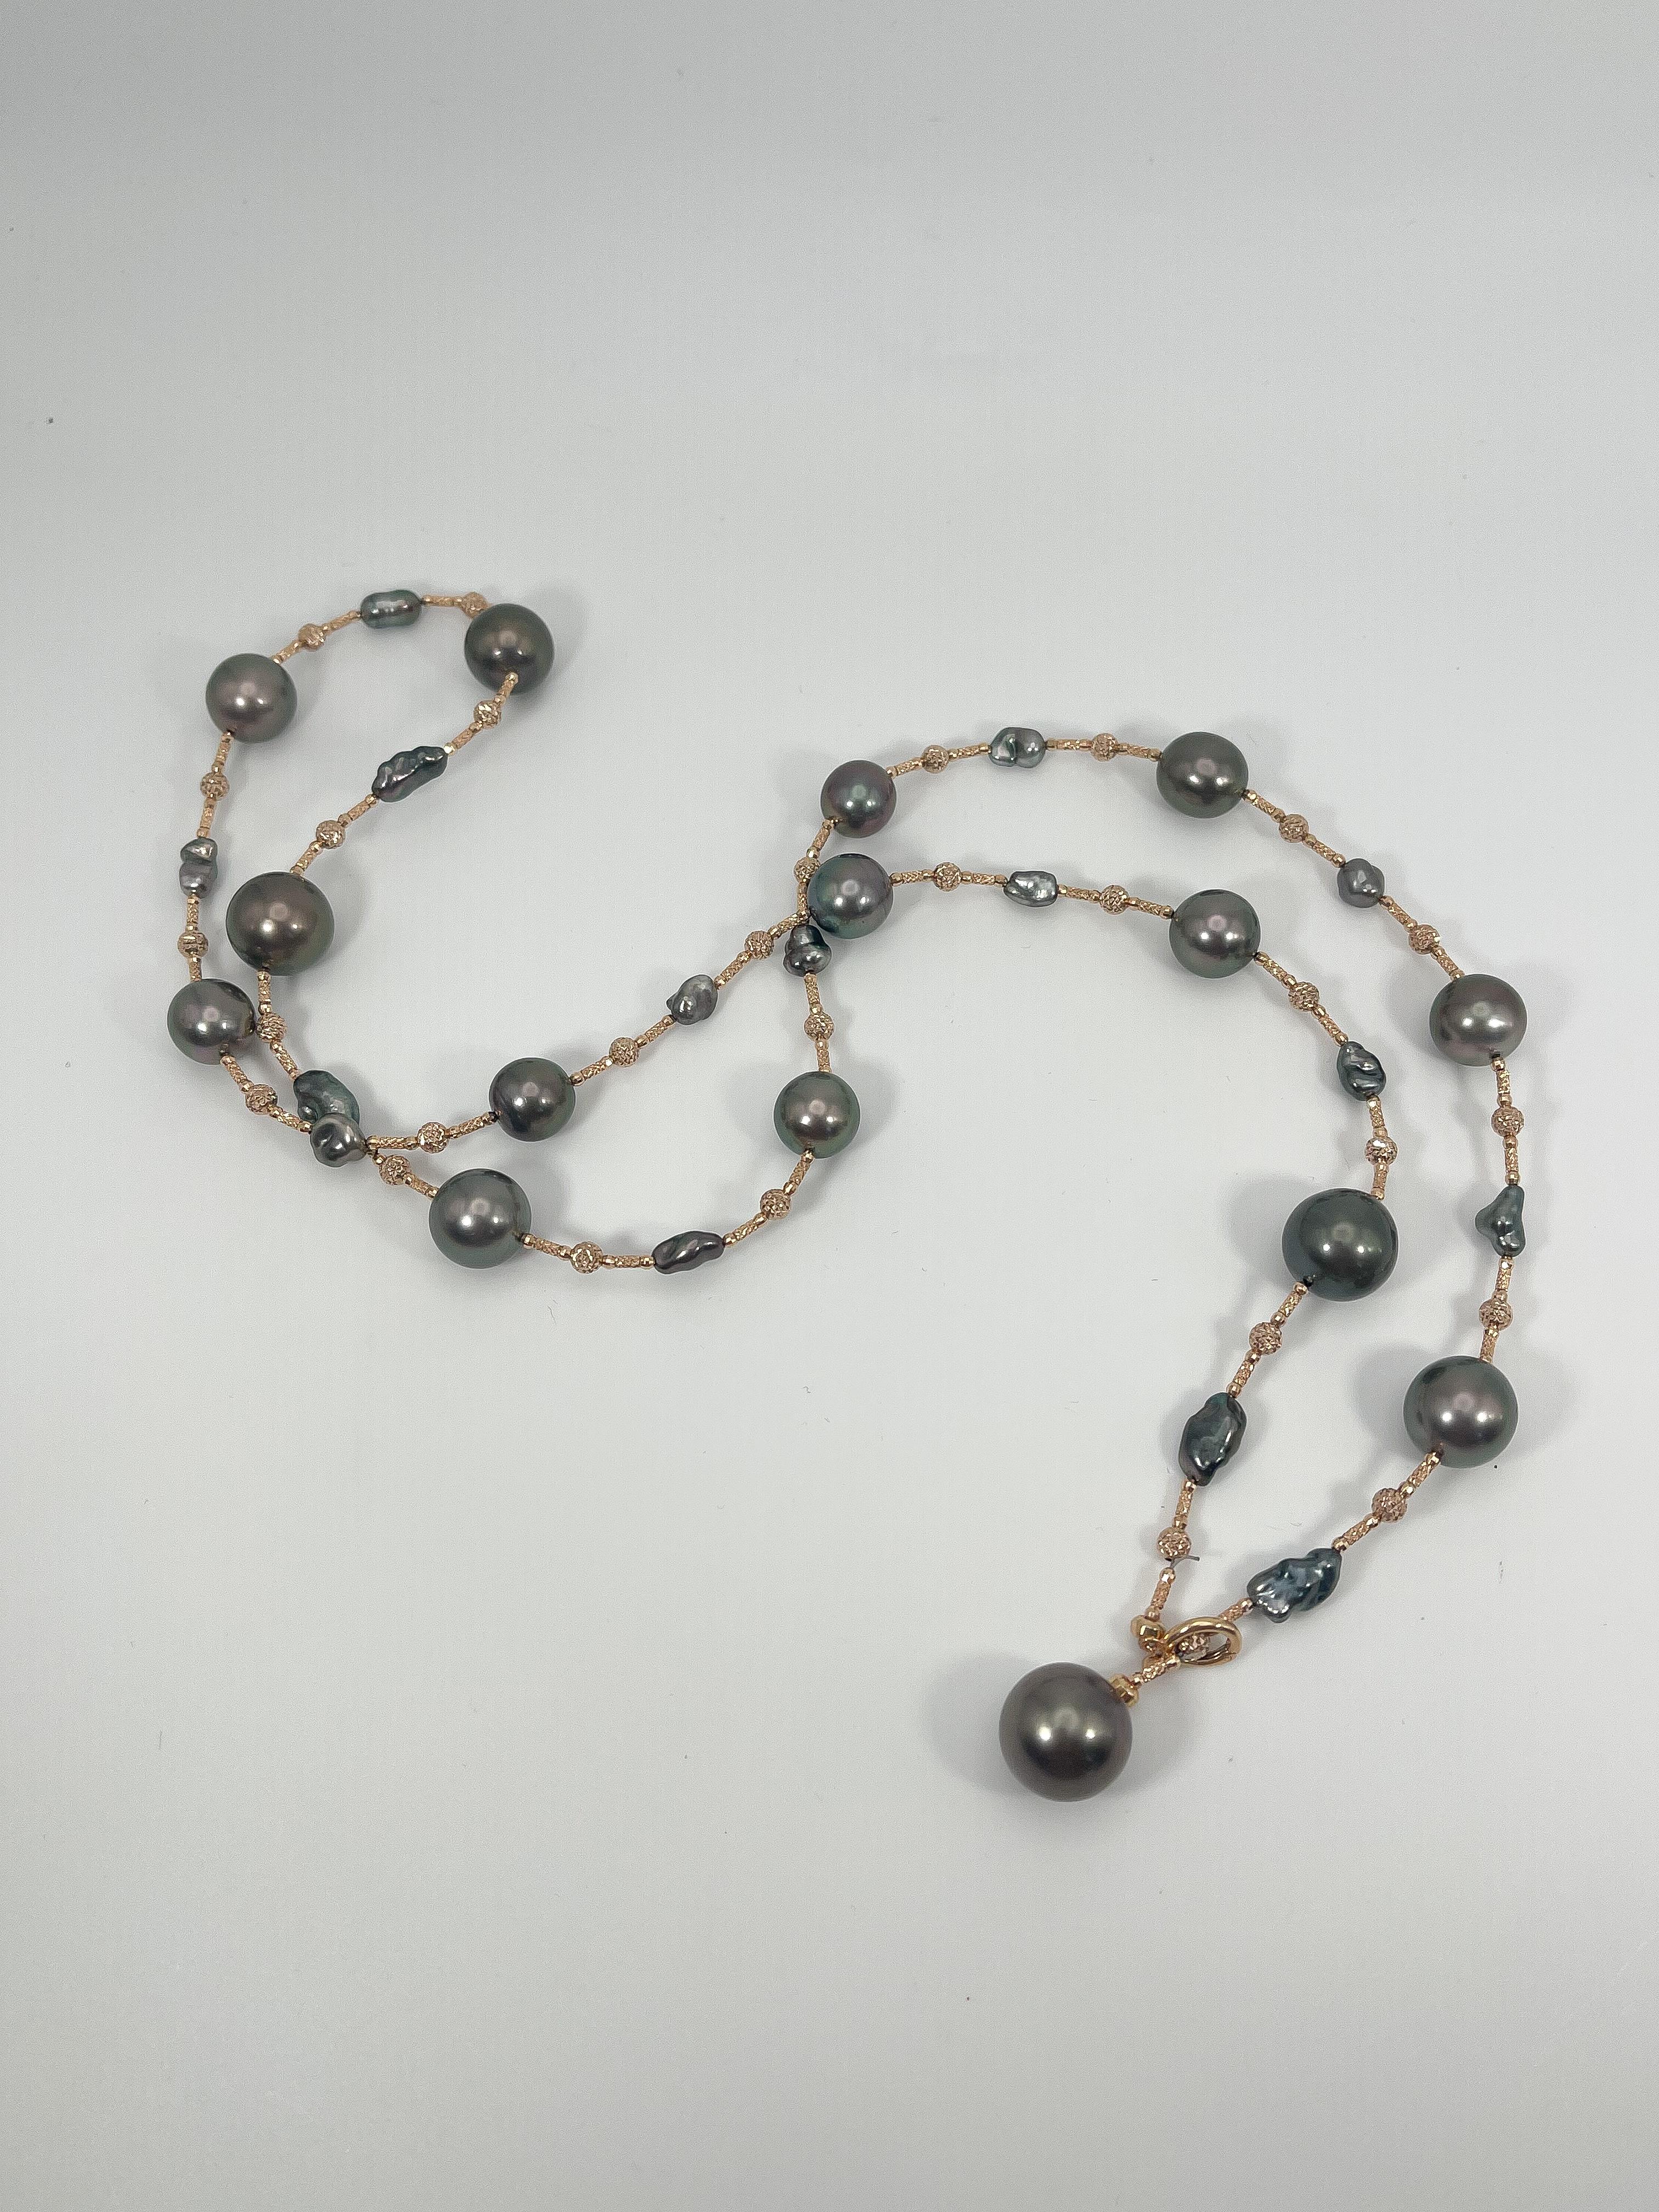 Collier de perles de Tahiti en or rose 18 carats. Les perles sont de 11mm, a un fermoir en perles pour fermer le collier, le collier est 32 pouces de long, peut être porté dans 7 façons différentes, a un poids total de 53,3 grammes.